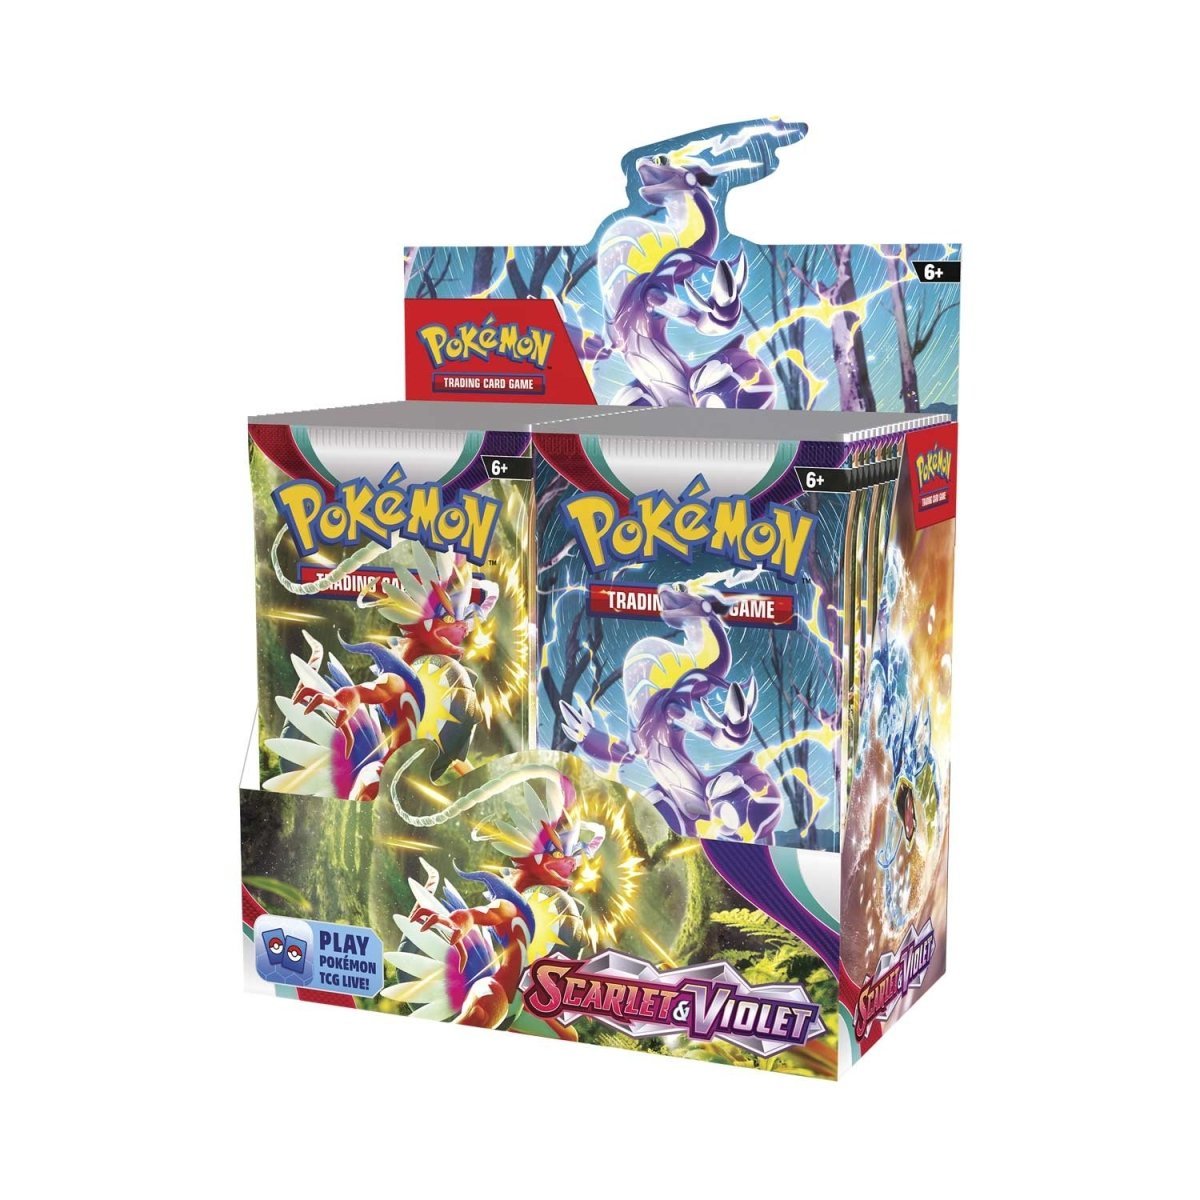 Pokémon TCG: Scarlet & Violet Booster Box - PokeRvm